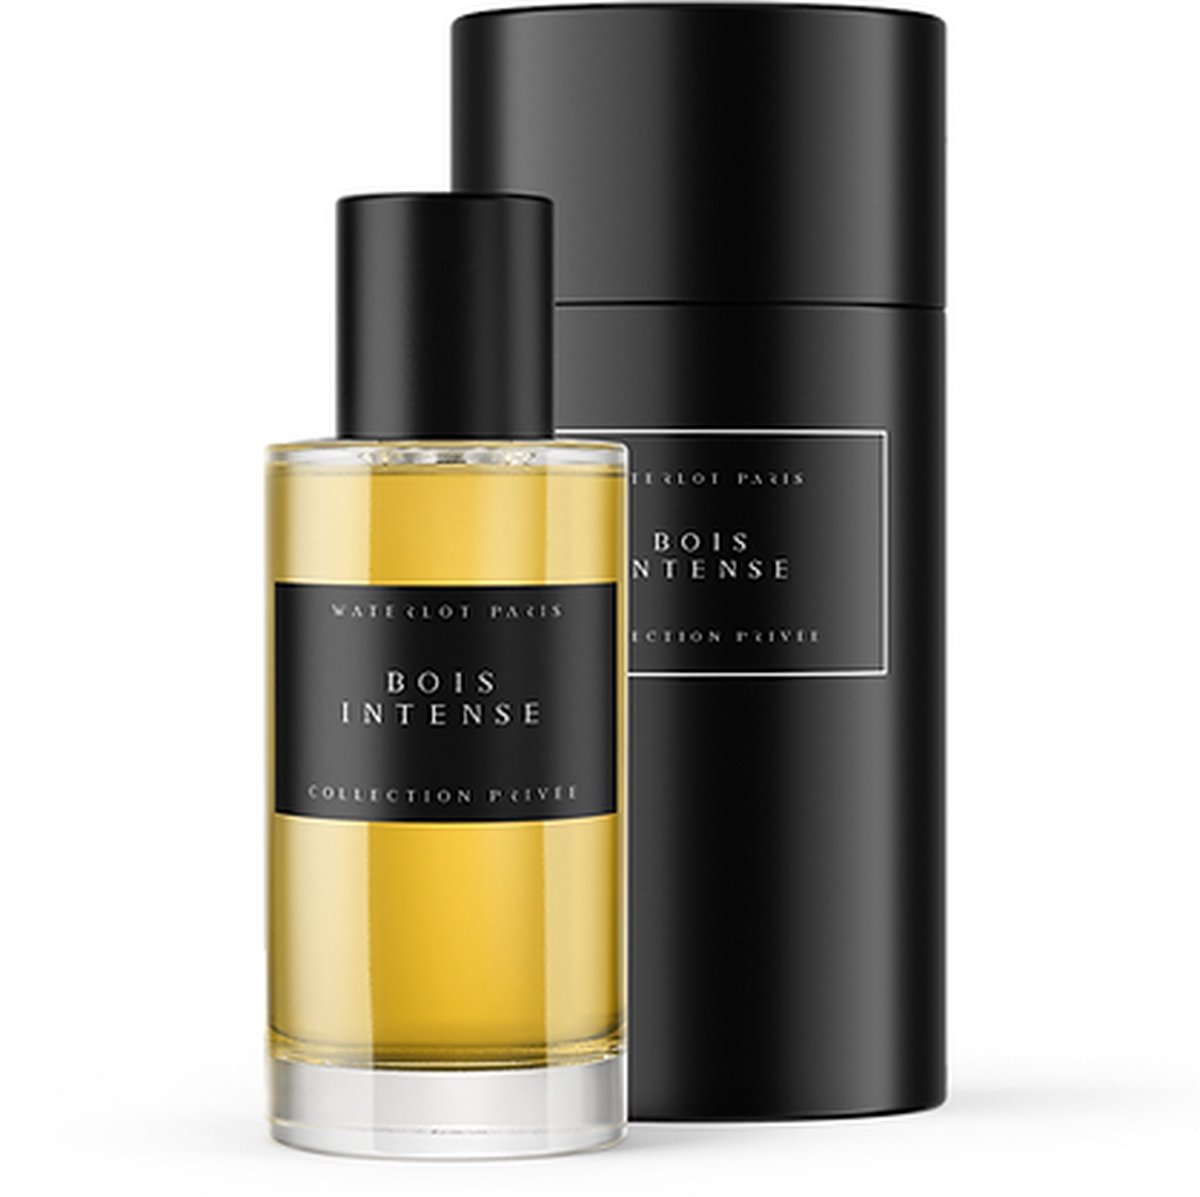 Waterlot Paris Bois Intense - privécollectie parfum - vanille, amber - unisex - hout, muskus - fruitige noten 50ml